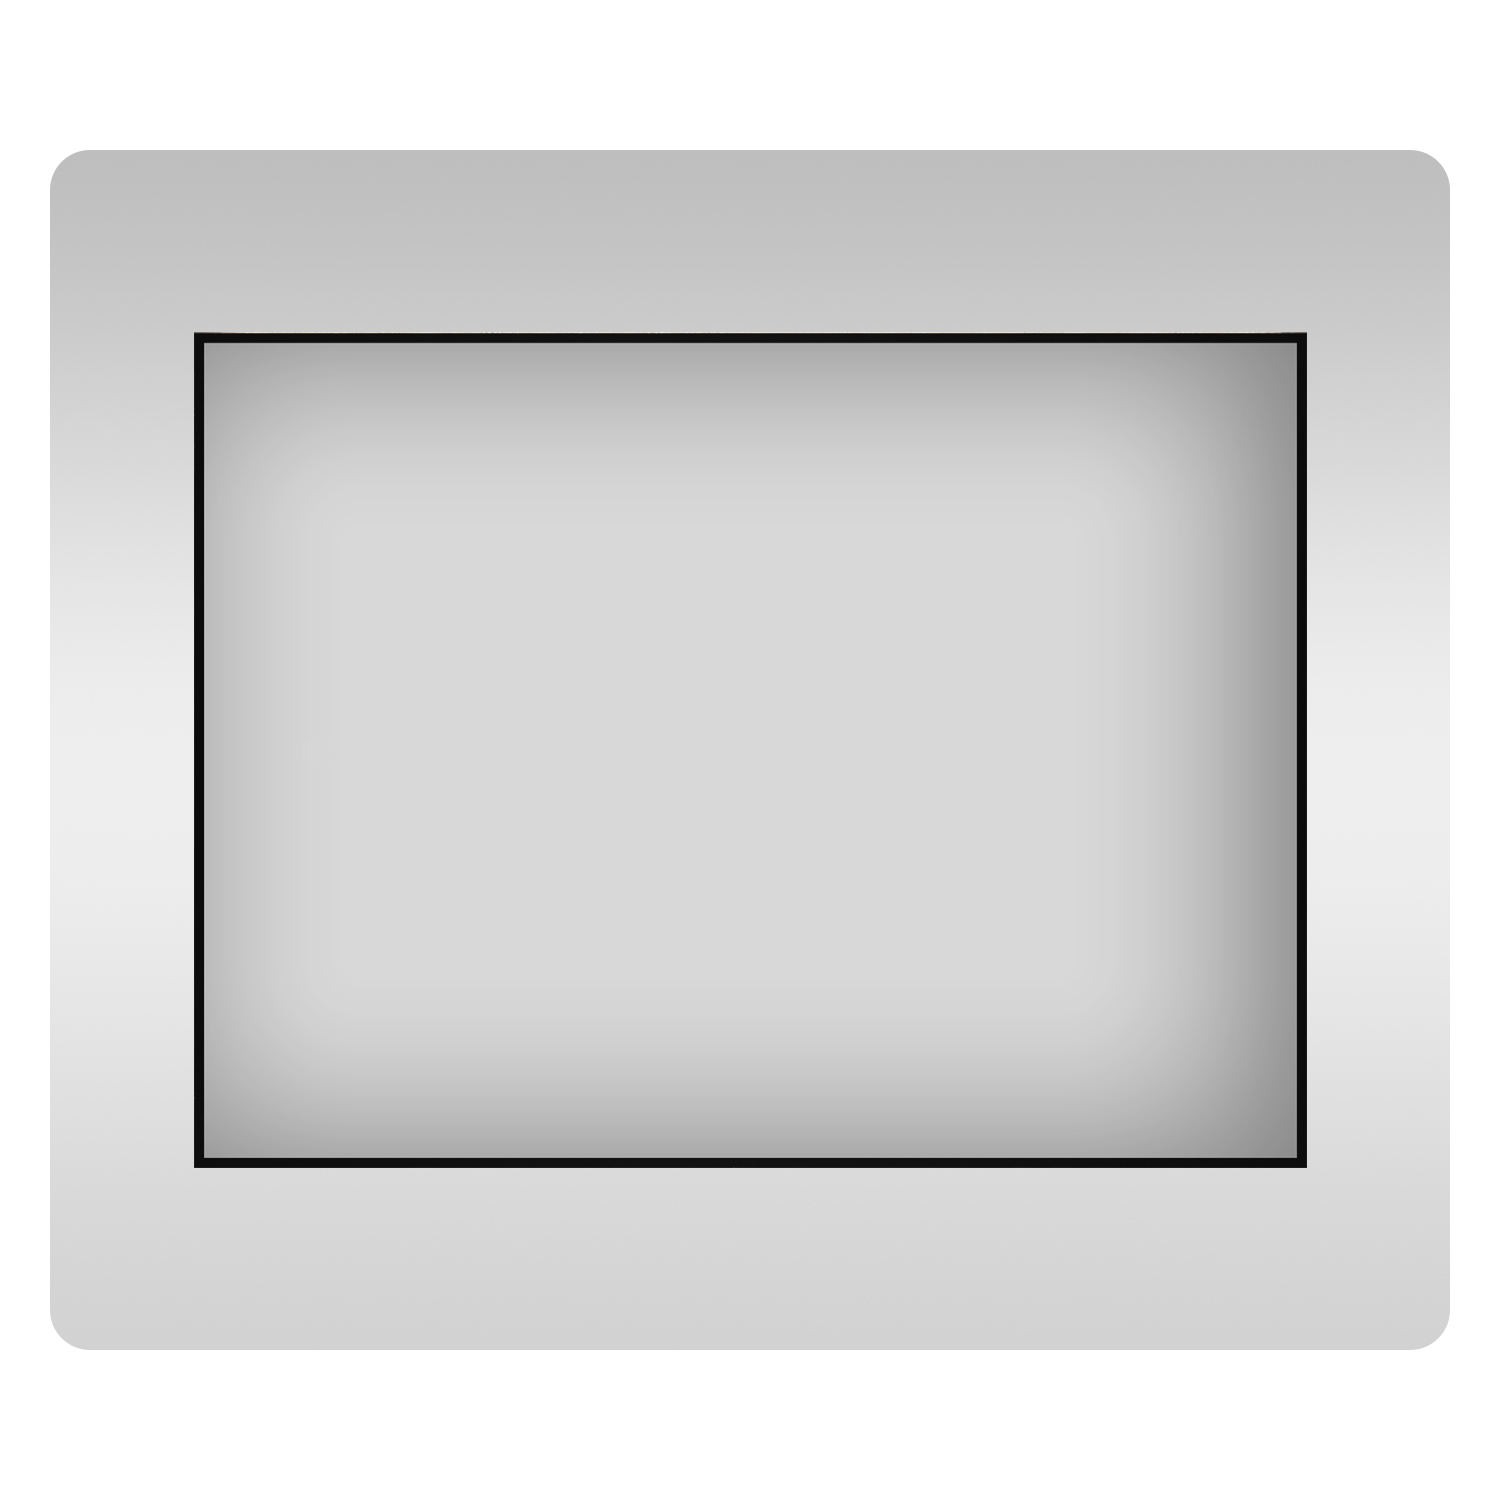 Влагостойкое прямоугольное зеркало Wellsee 7 Rays' Spectrum 172200610, 80х55 см зеркало mixline эльза 80х55 сенсор подсветка с увеличением 4630104801423